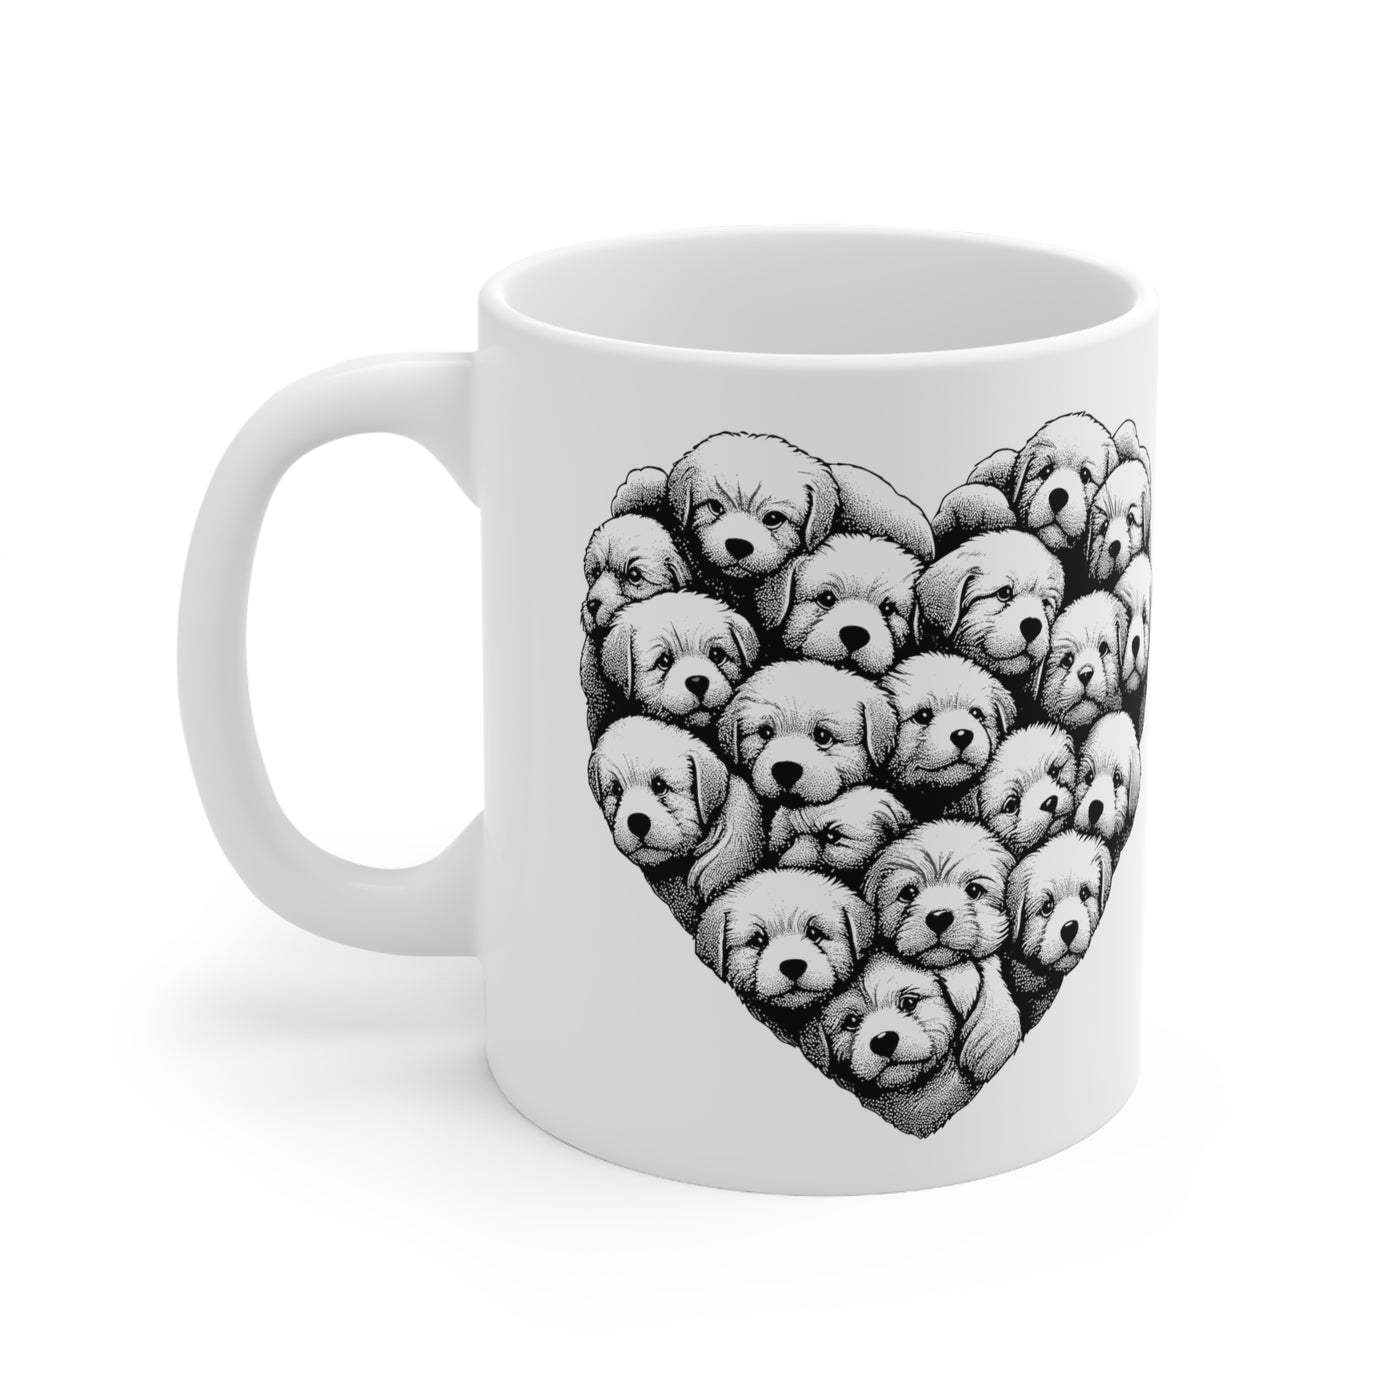 Heart Of Dogs Ceramic Mug 11oz